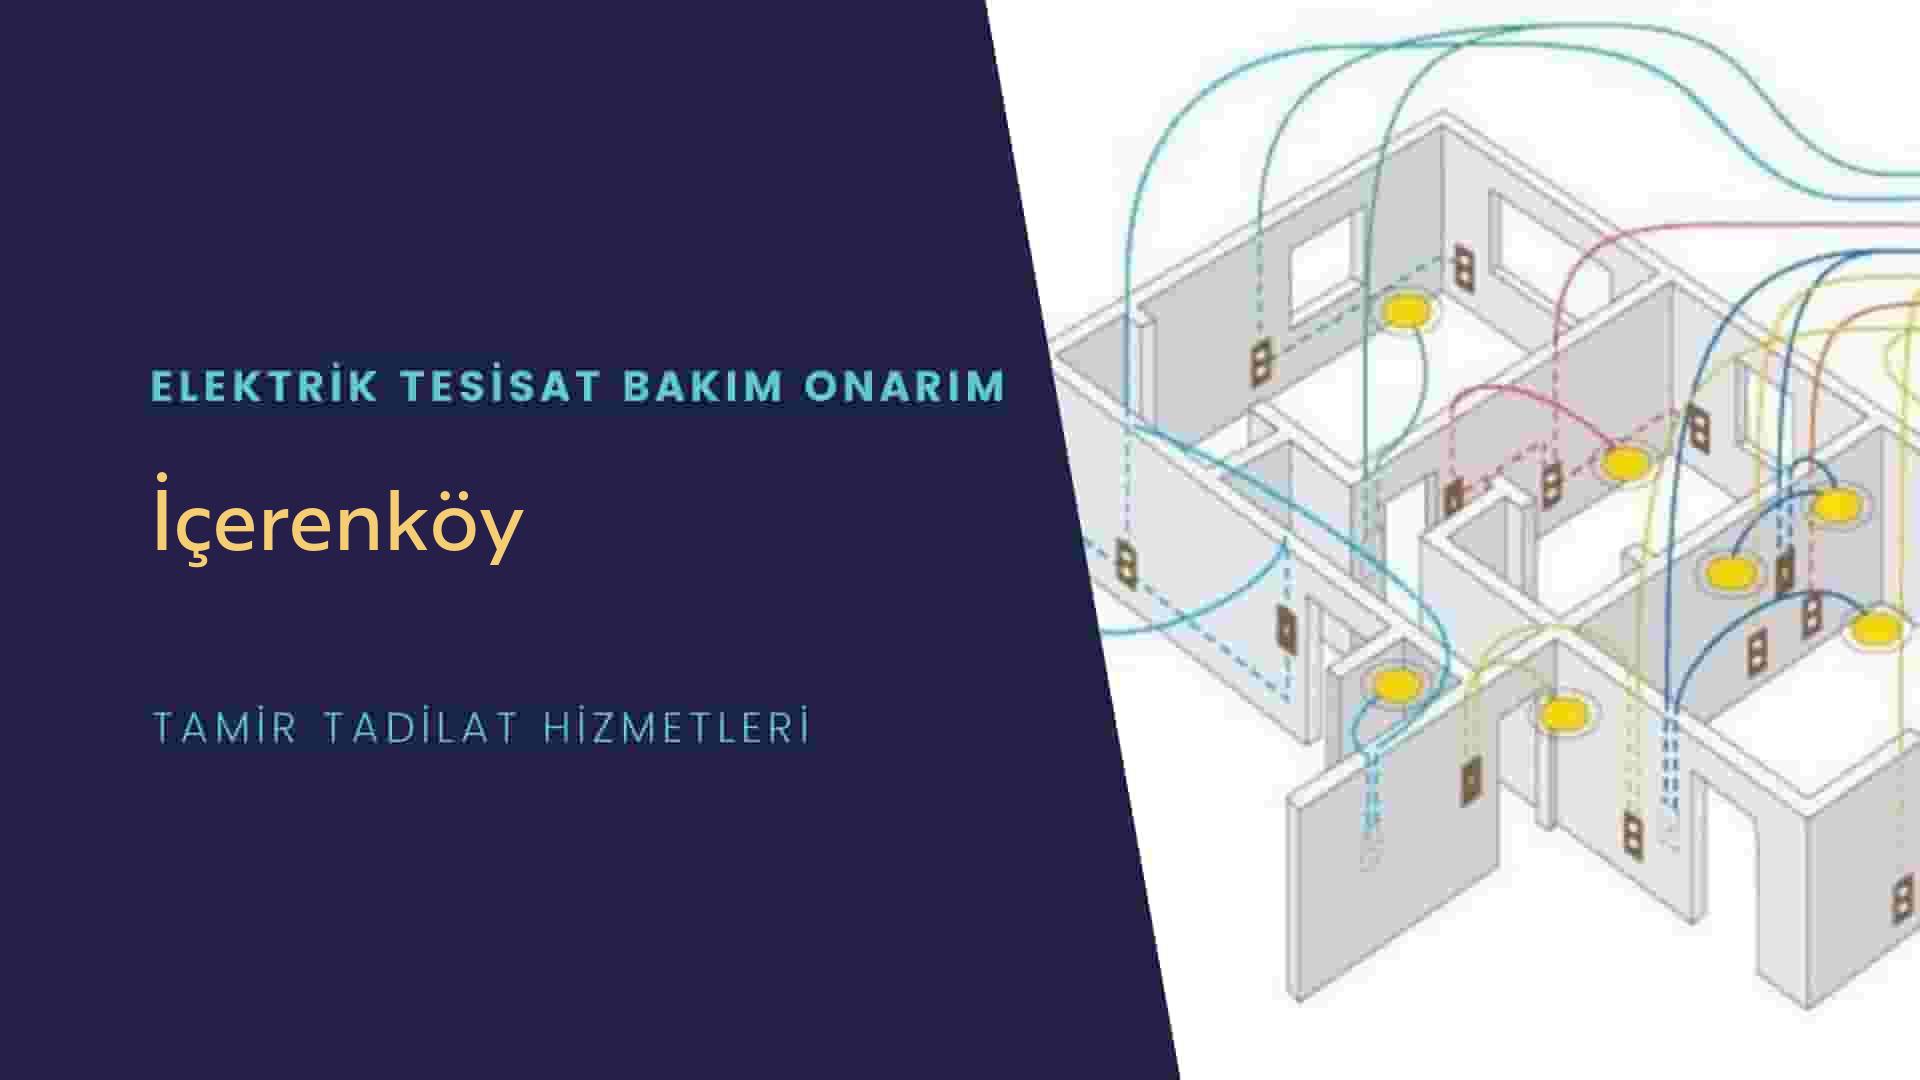 İçerenköy'de elektrik tesisatı ustalarımı arıyorsunuz doğru adrestenizi İçerenköy elektrik tesisatı ustalarımız 7/24 sizlere hizmet vermekten mutluluk duyar.